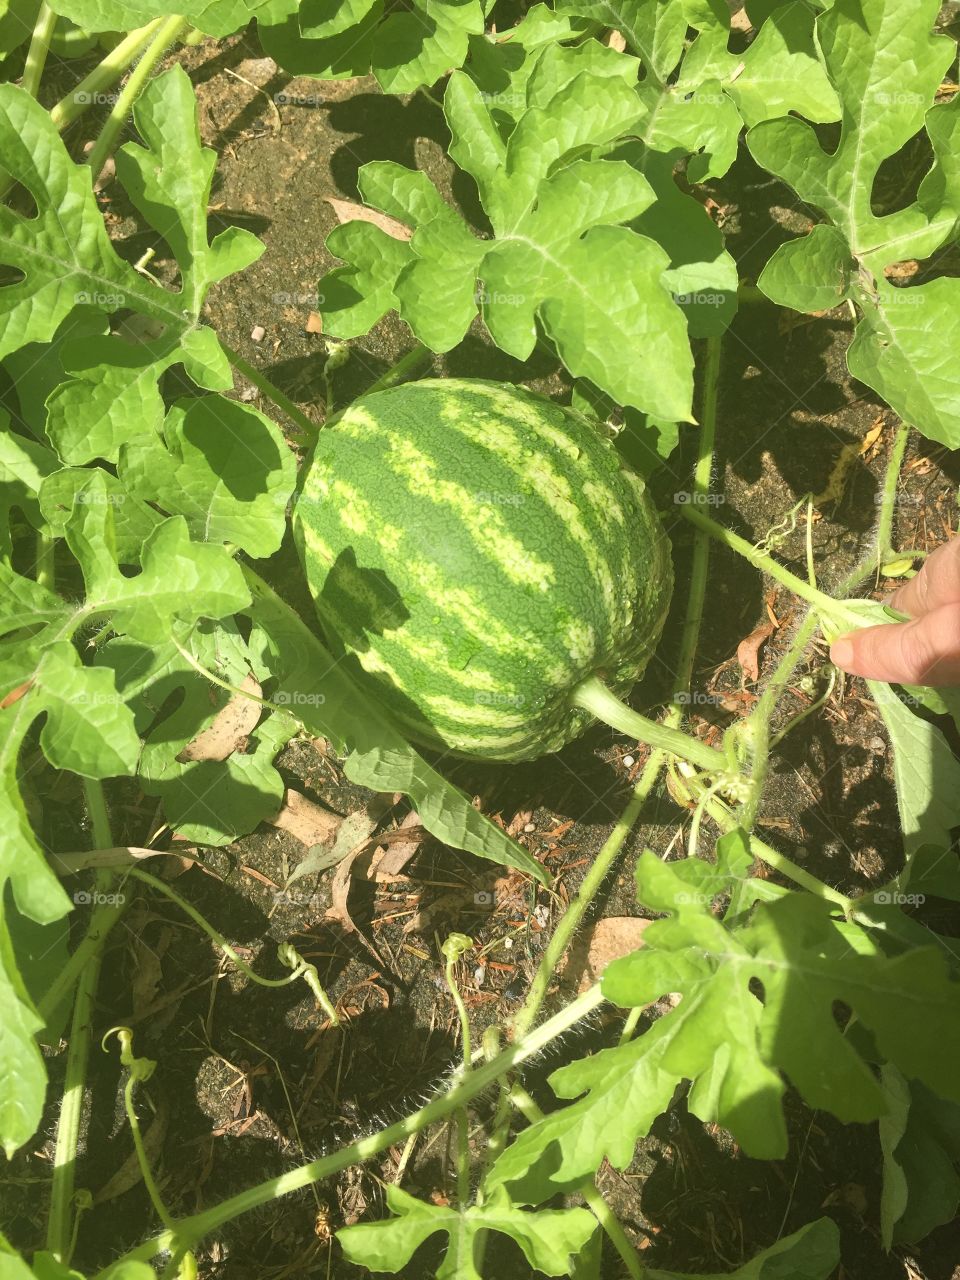 Watermelon from my garden. 